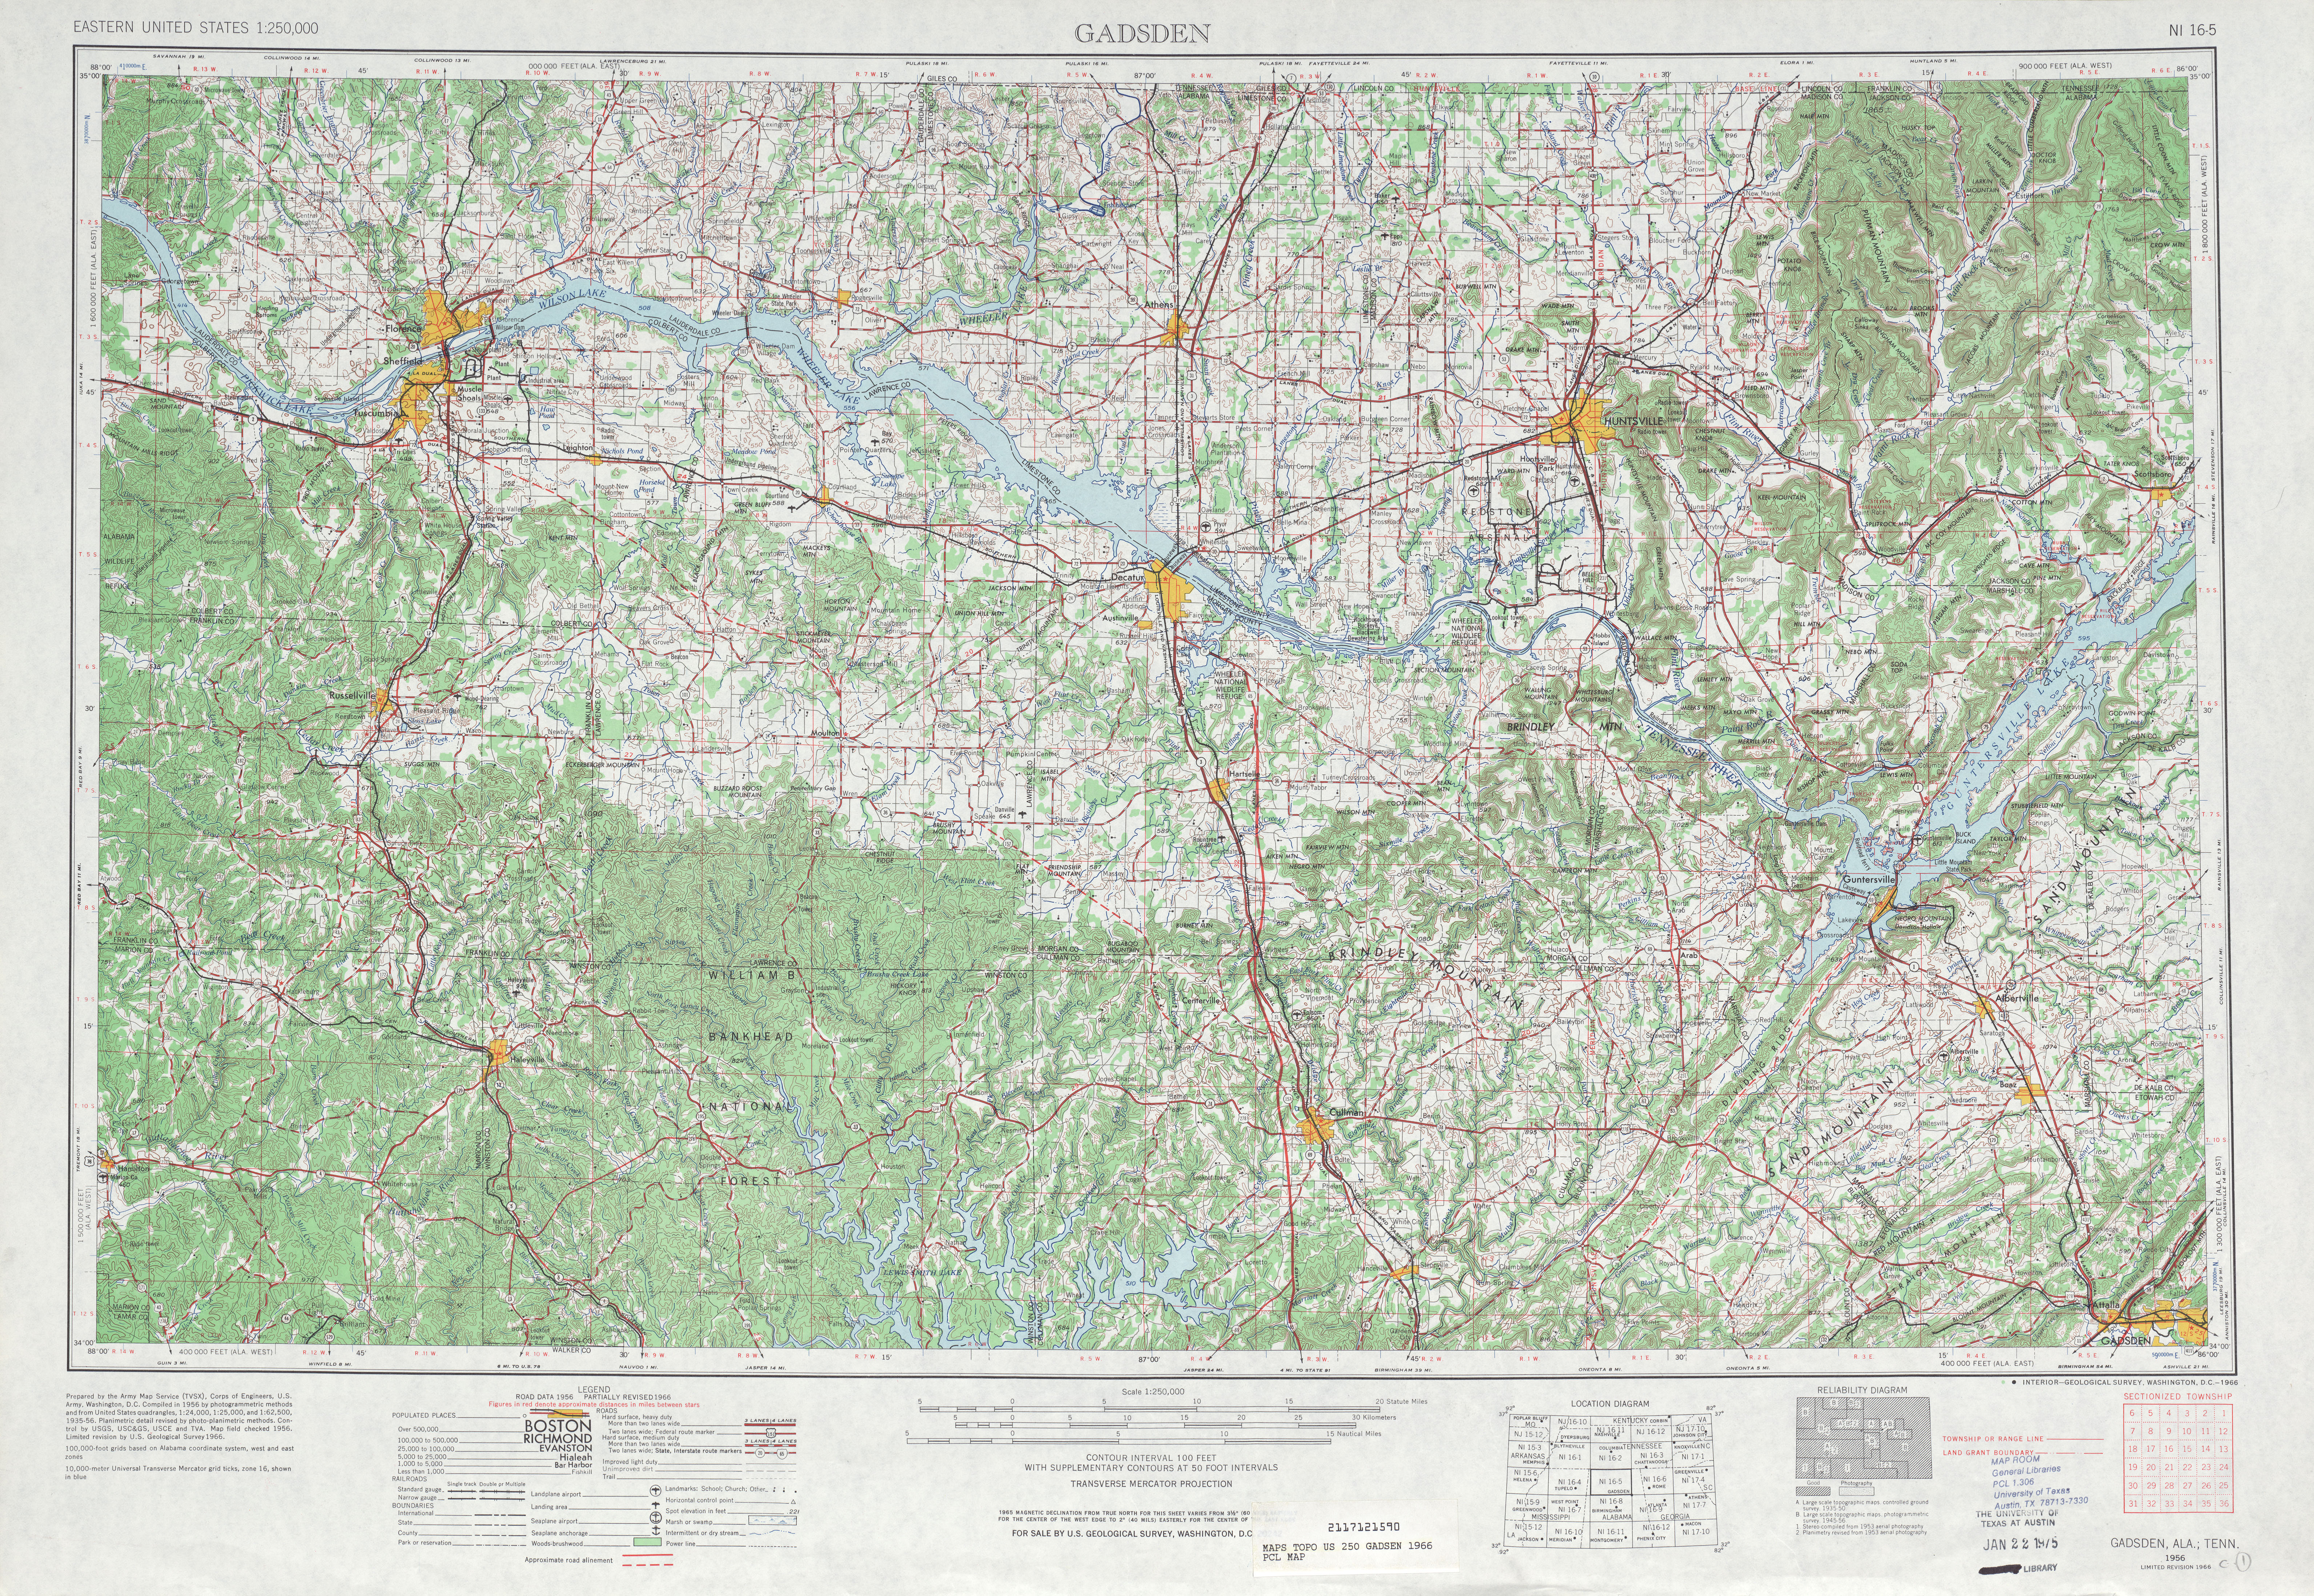 Hoja Gadsen del Mapa Topográfico de los Estados Unidos 1966